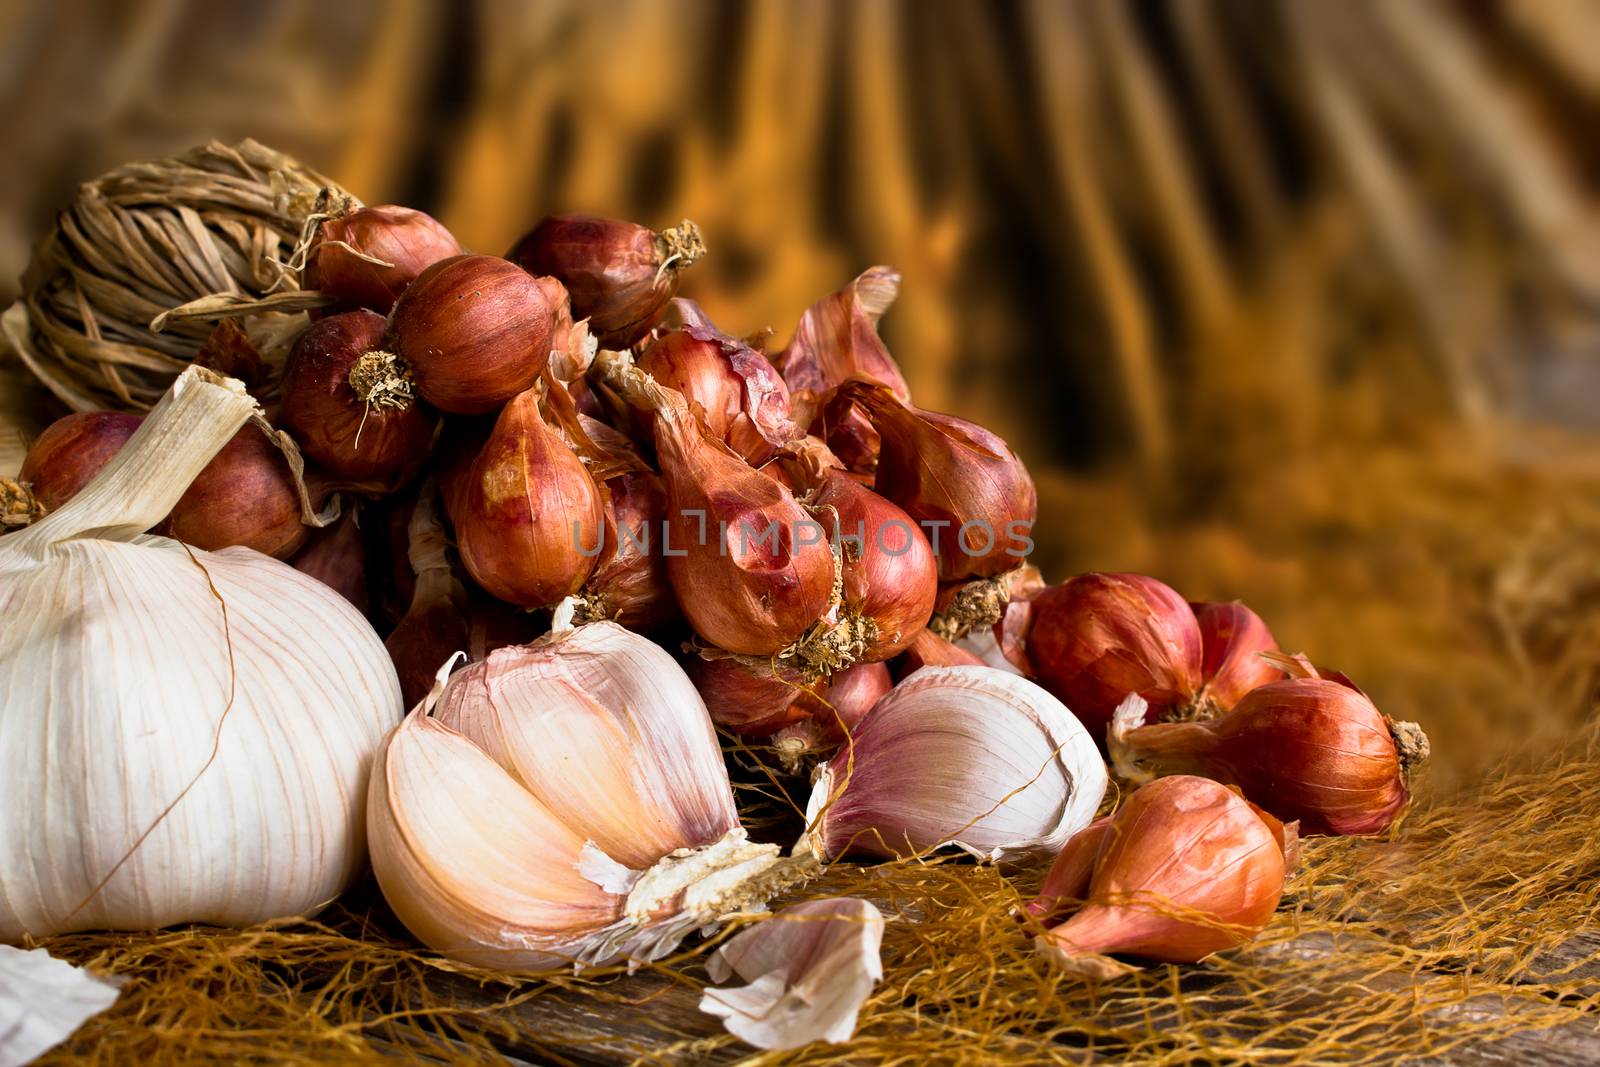 garlic and onion by narinbg